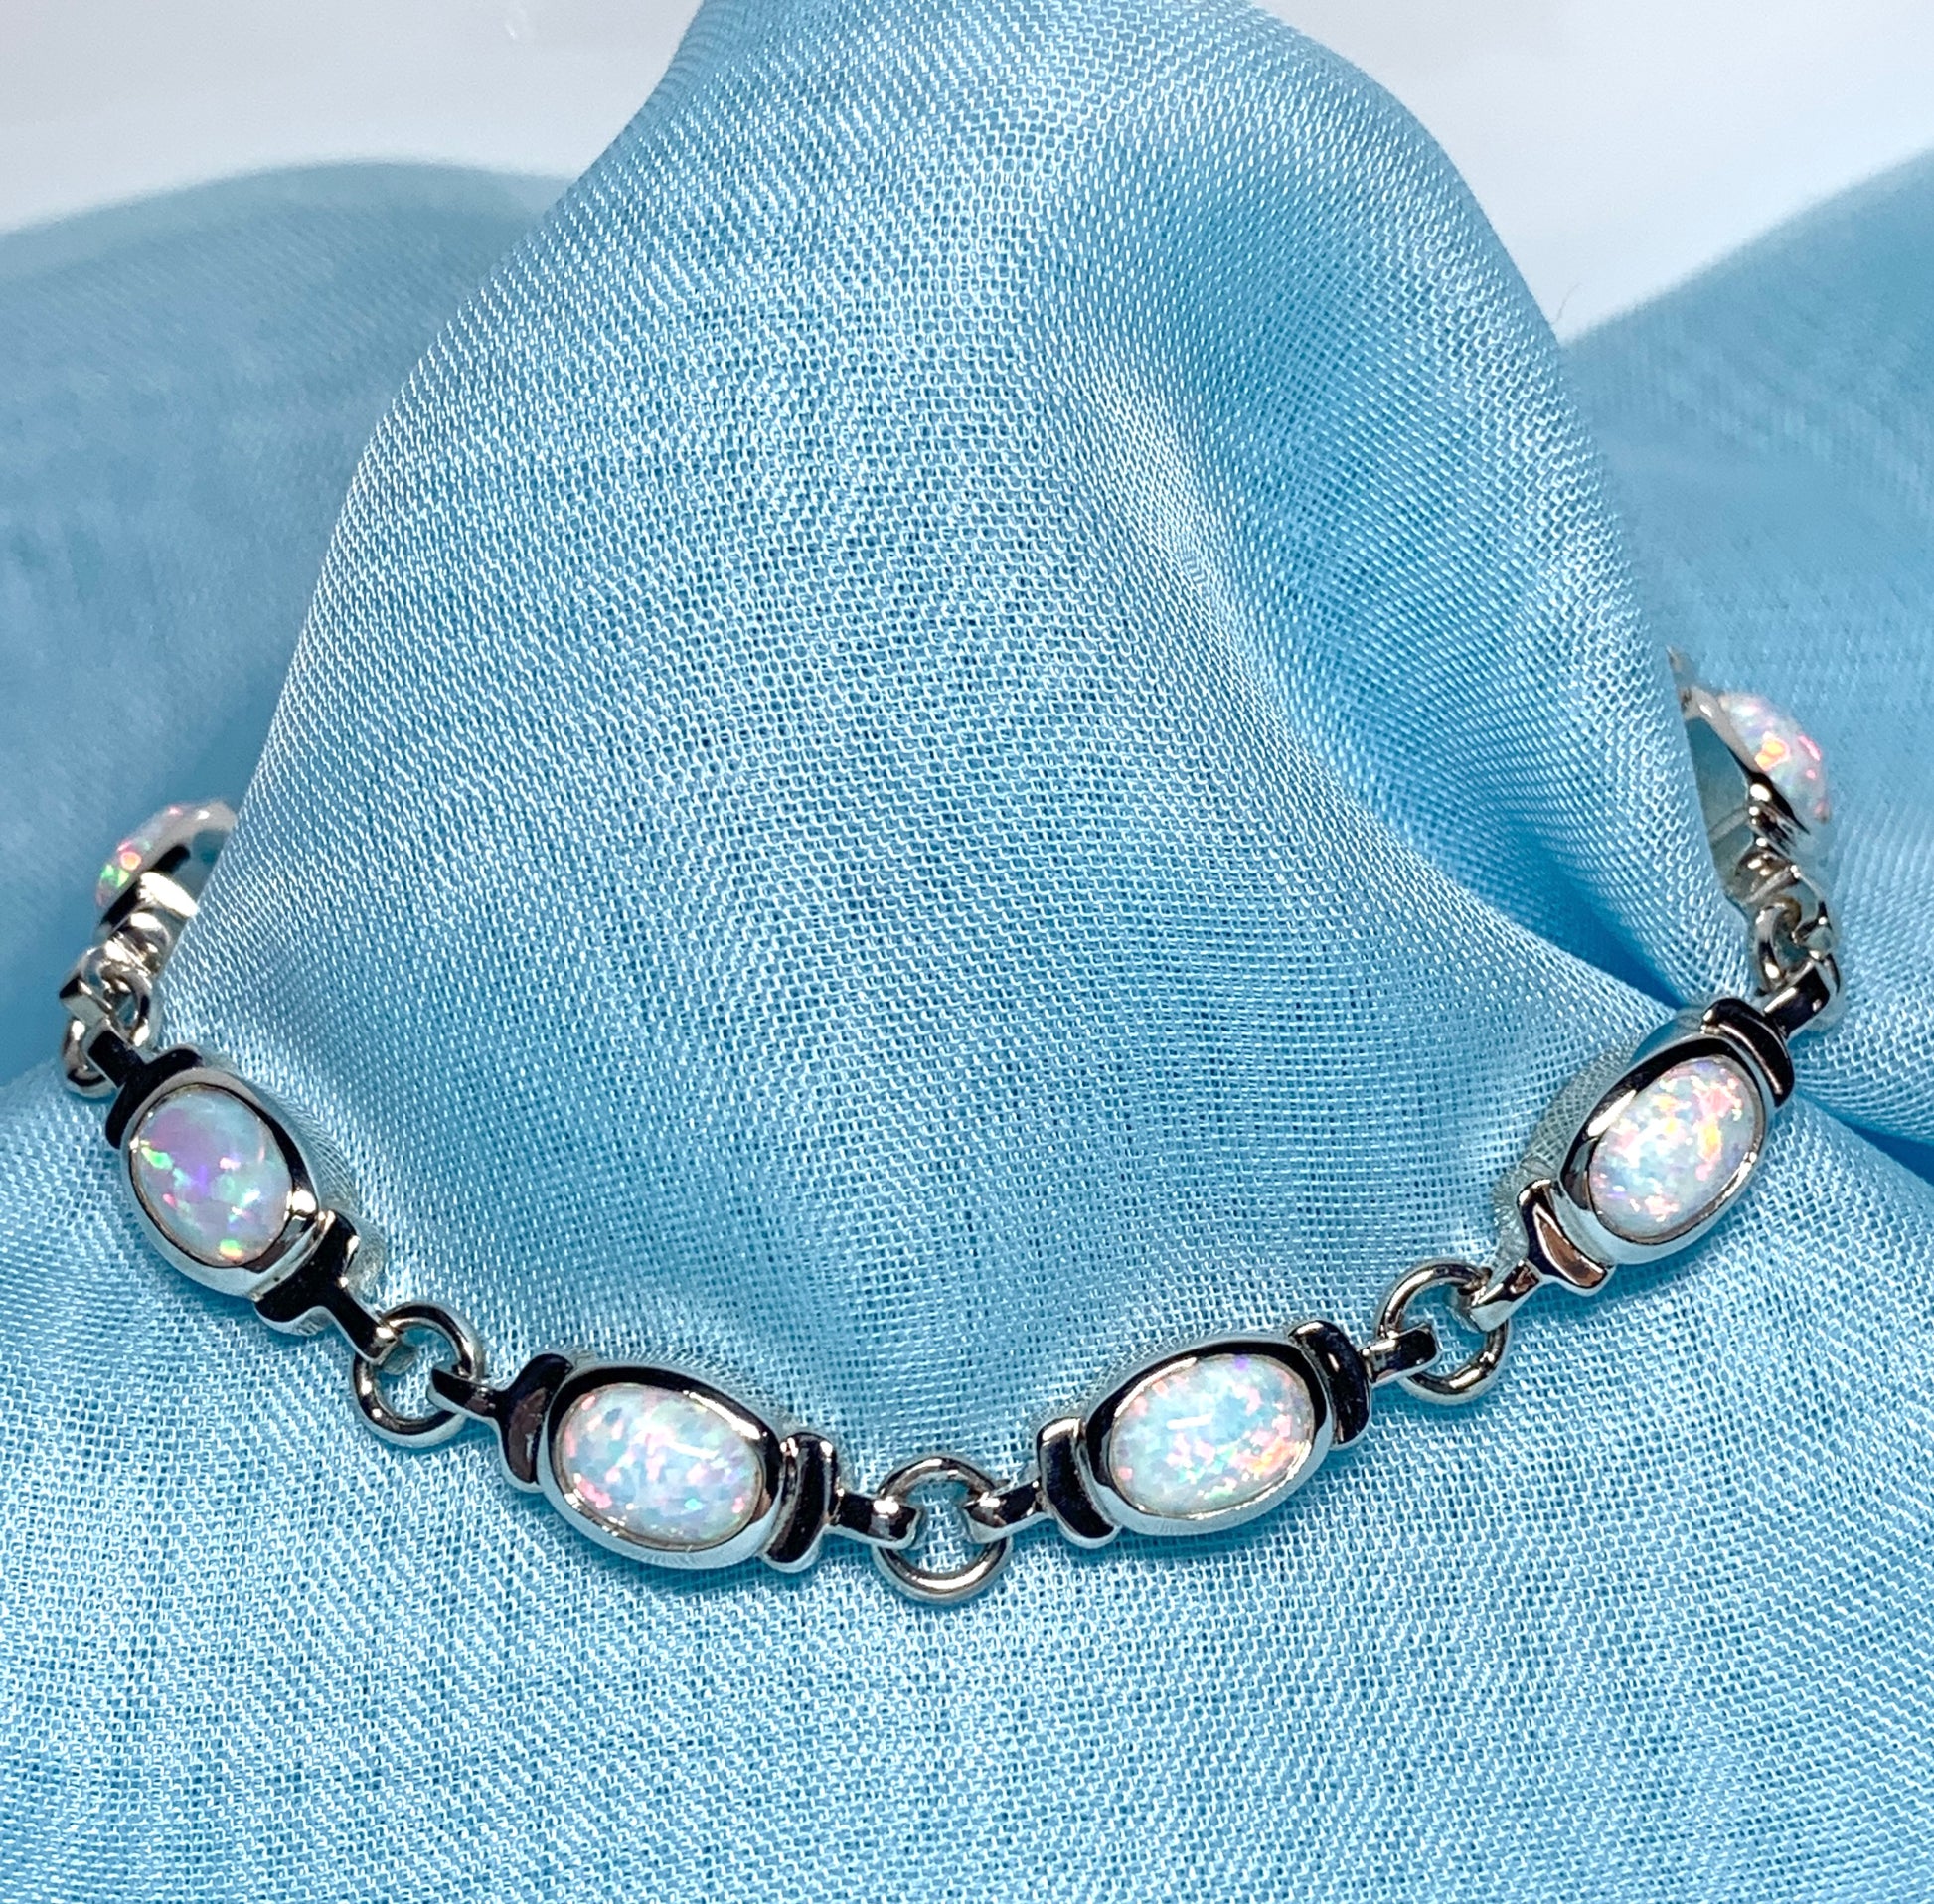 Opal sterling silver fancy oval bracelet